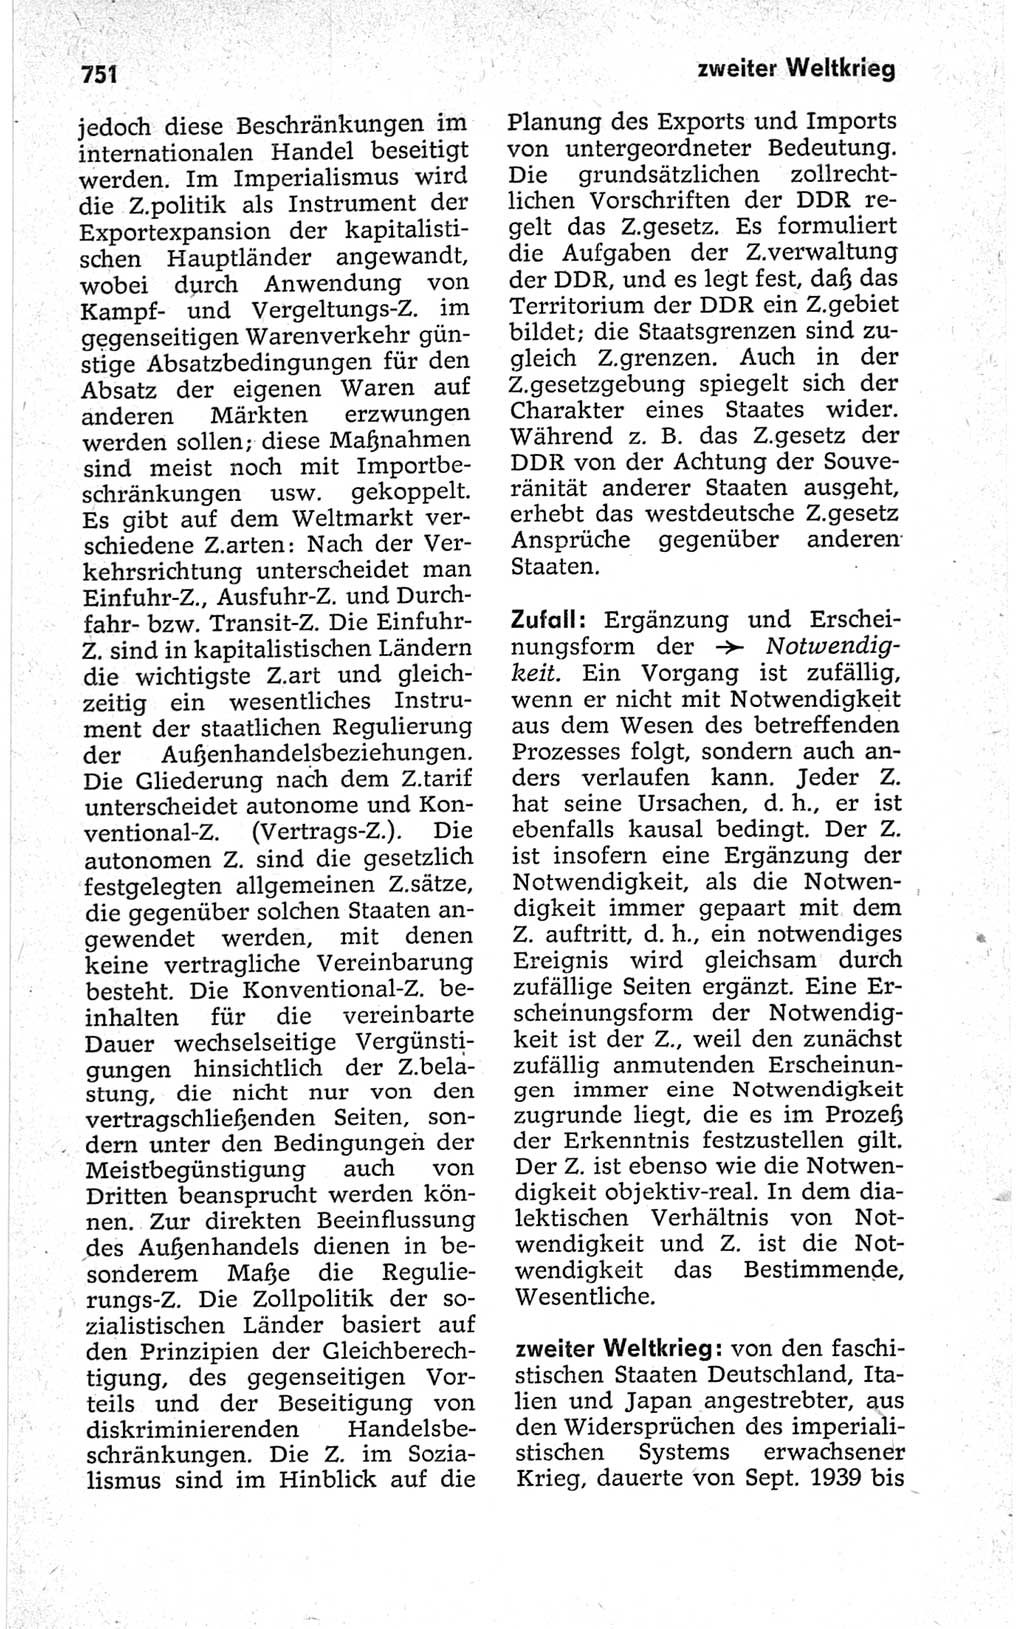 Kleines politisches Wörterbuch [Deutsche Demokratische Republik (DDR)] 1967, Seite 751 (Kl. pol. Wb. DDR 1967, S. 751)